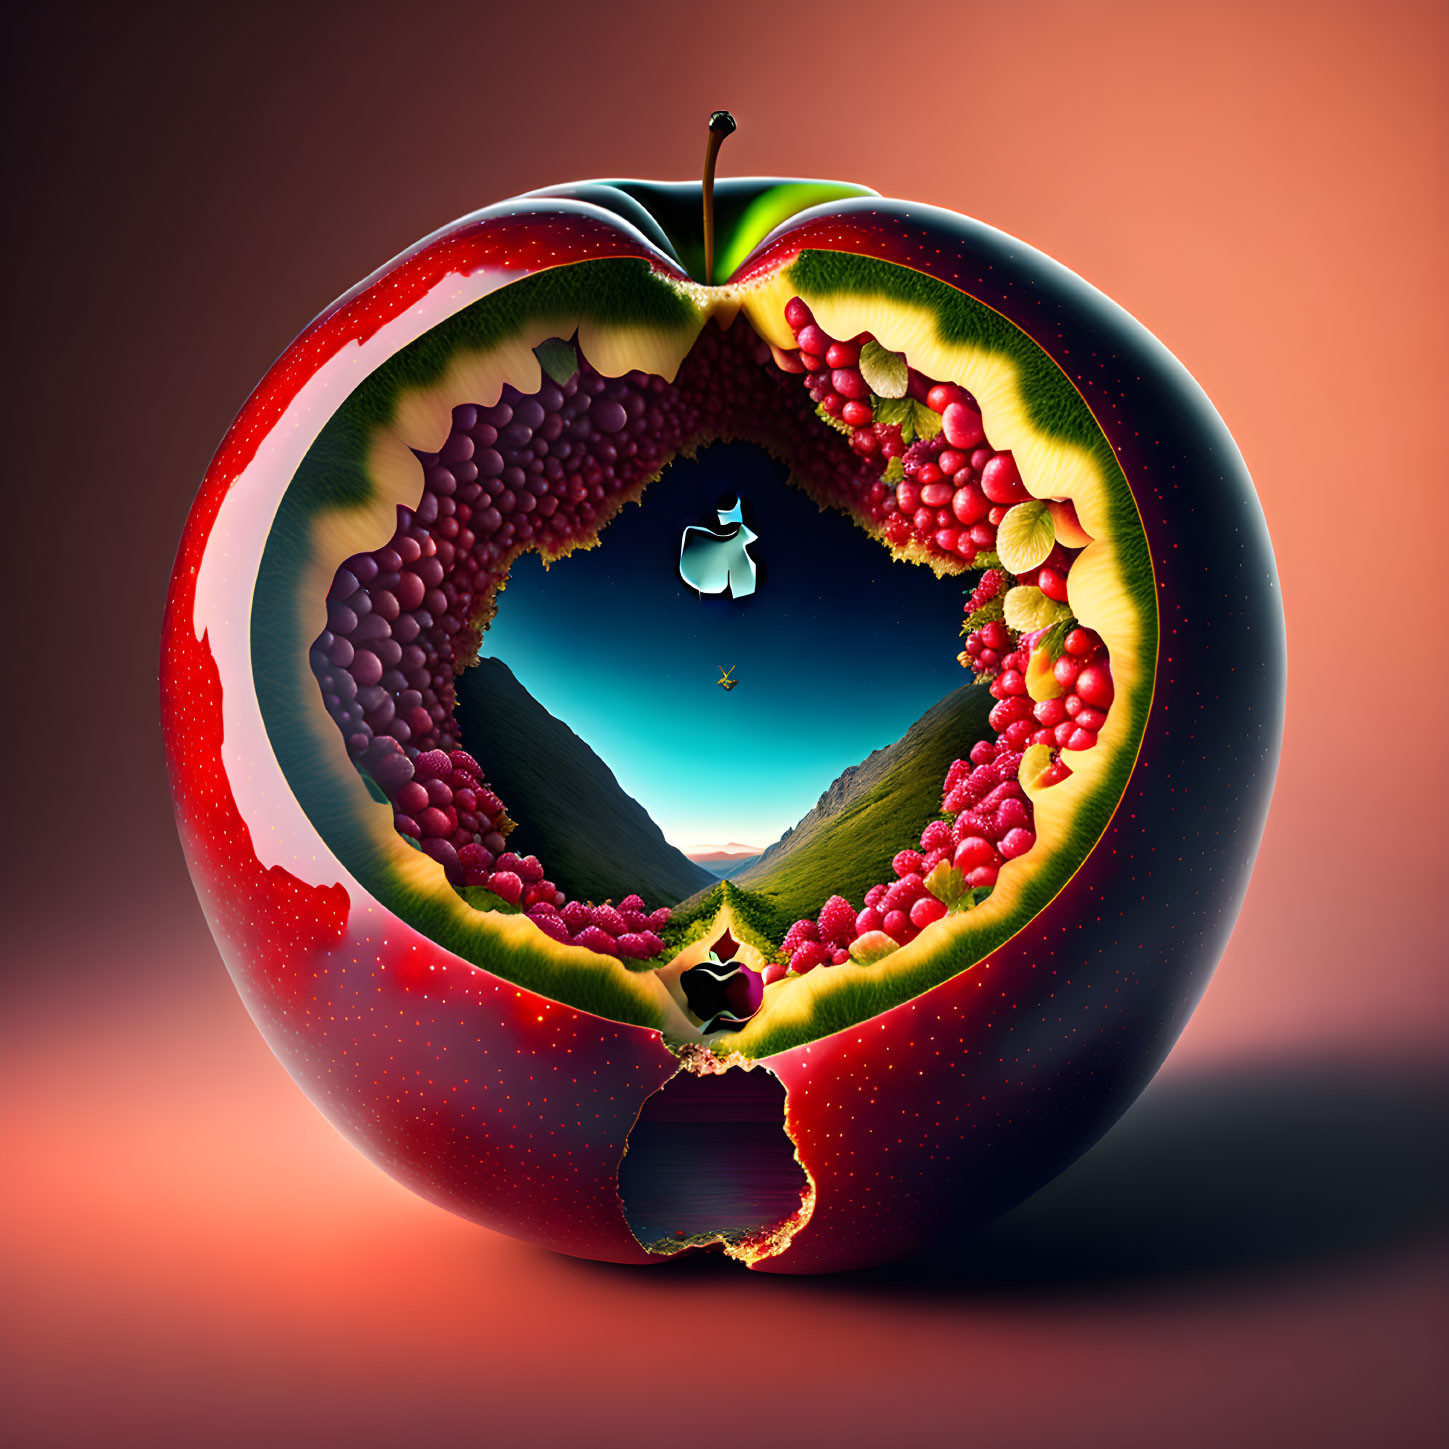 landscape inside a pomegranate